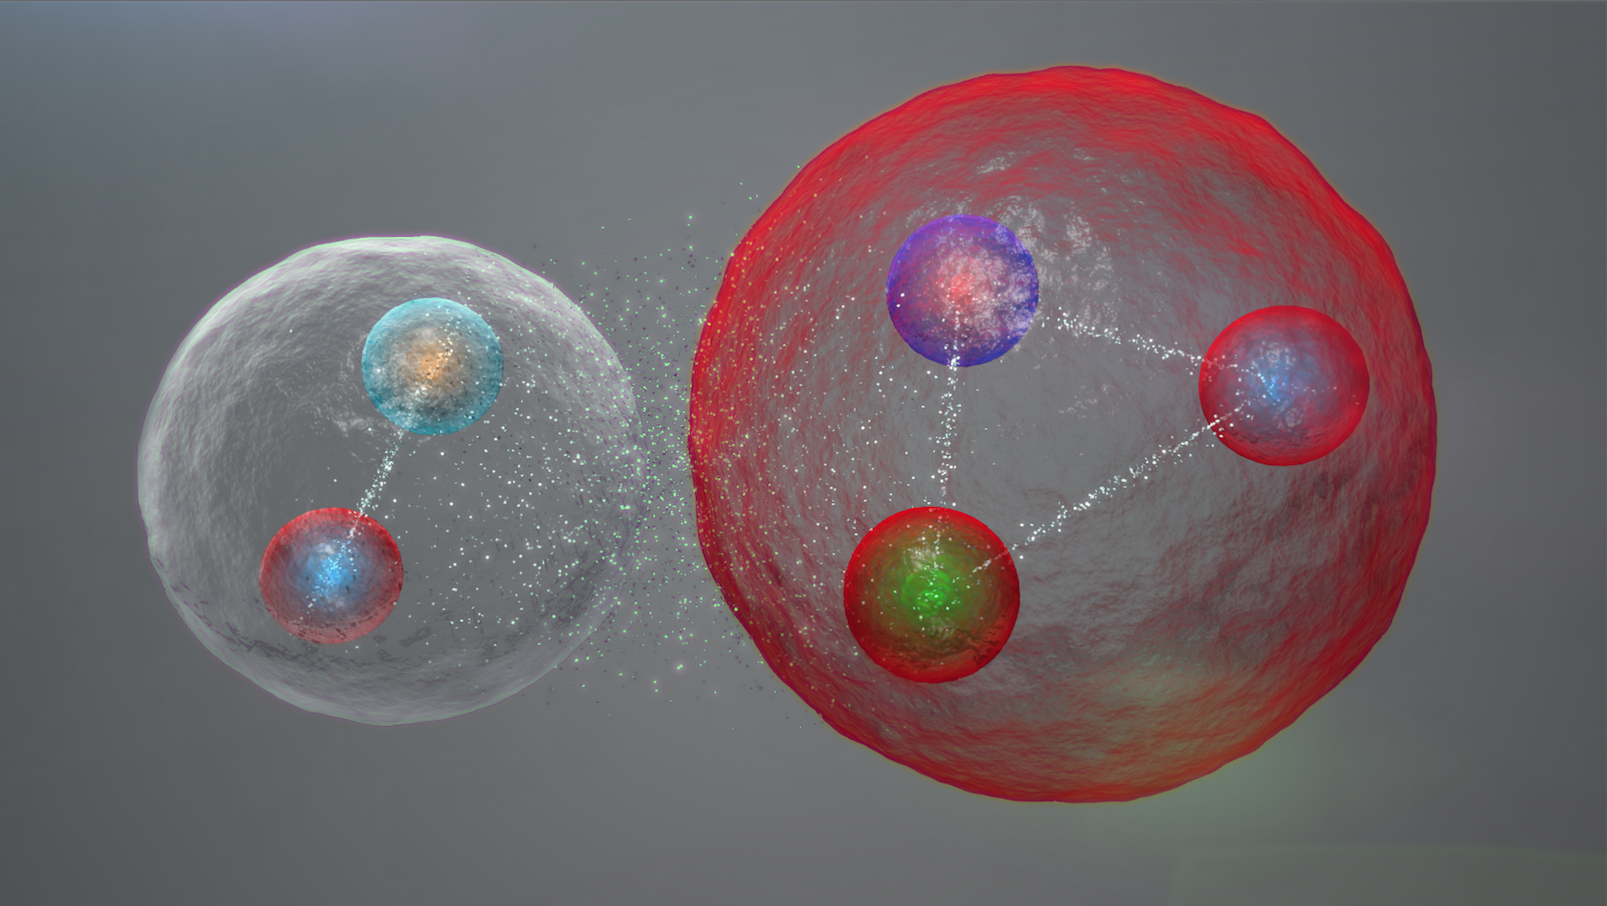 Warum im Universum mehr Materie als Antimaterie?